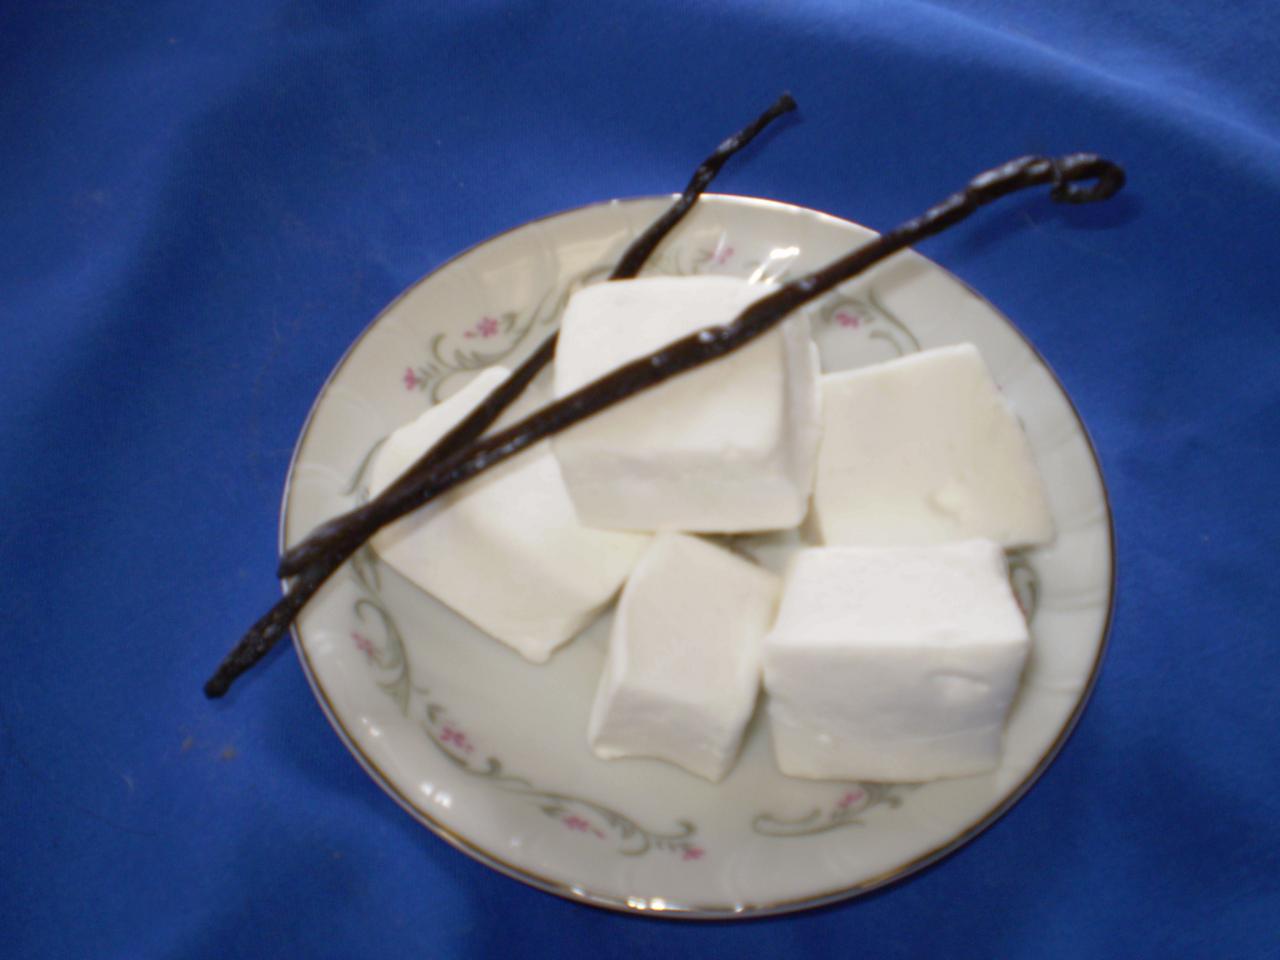 Vanilla bean marshmallows